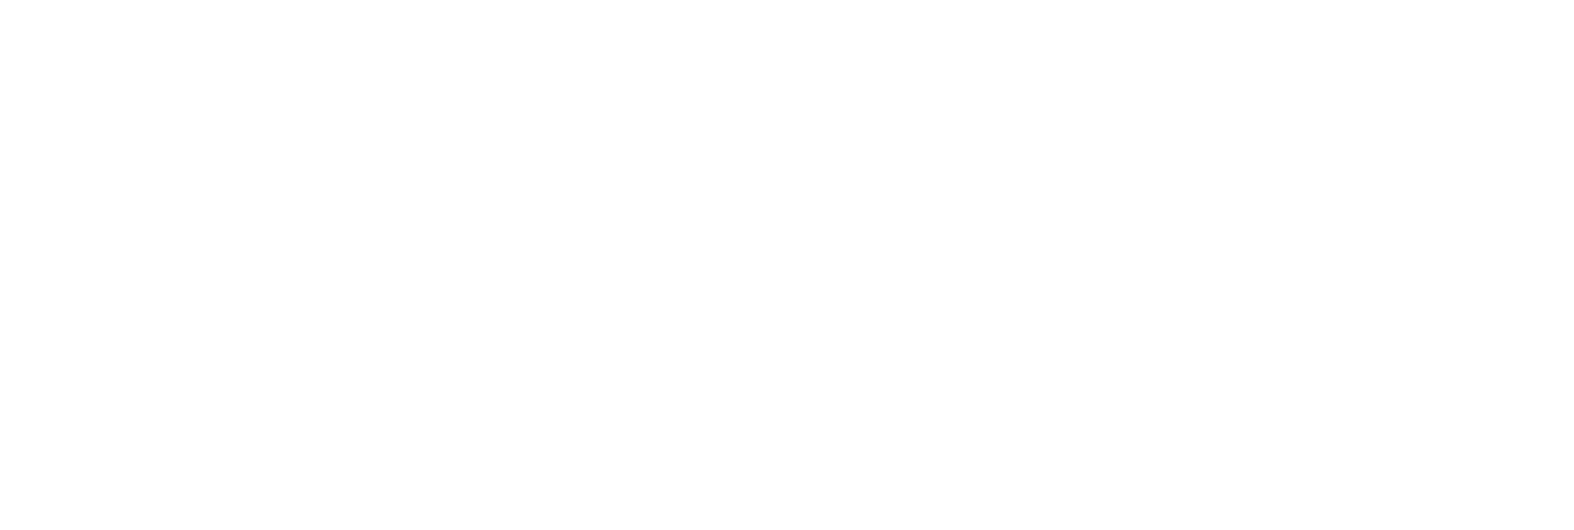 XOS logo grand pour les fonds sombres (PNG transparent)